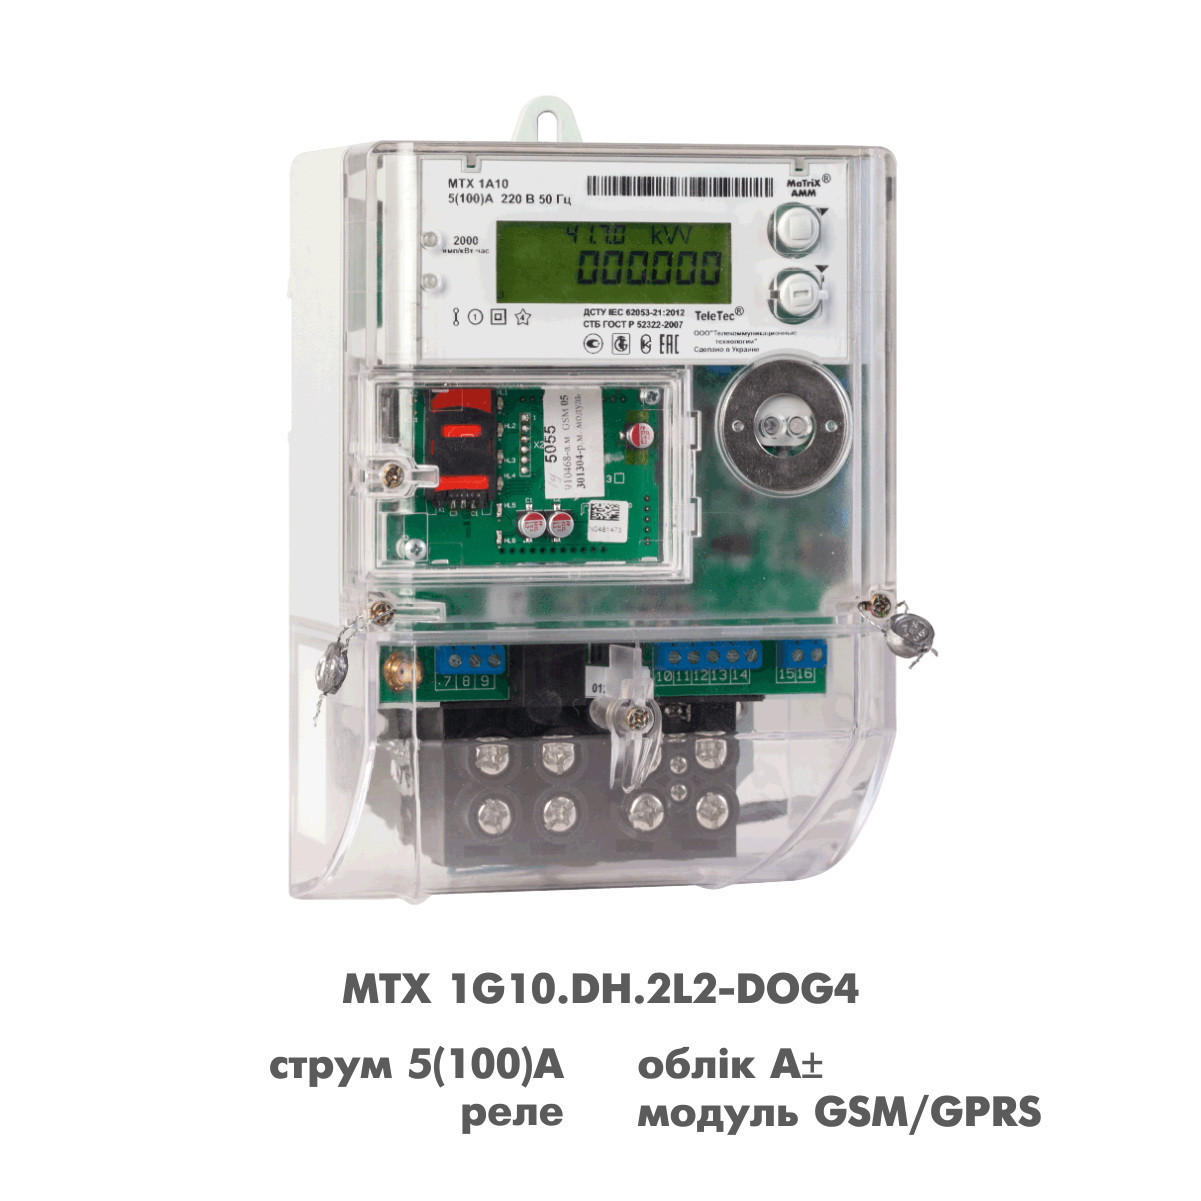 Електрочисник MTX 1G10.DH.2L2-DOG4 для зеленого тарифу